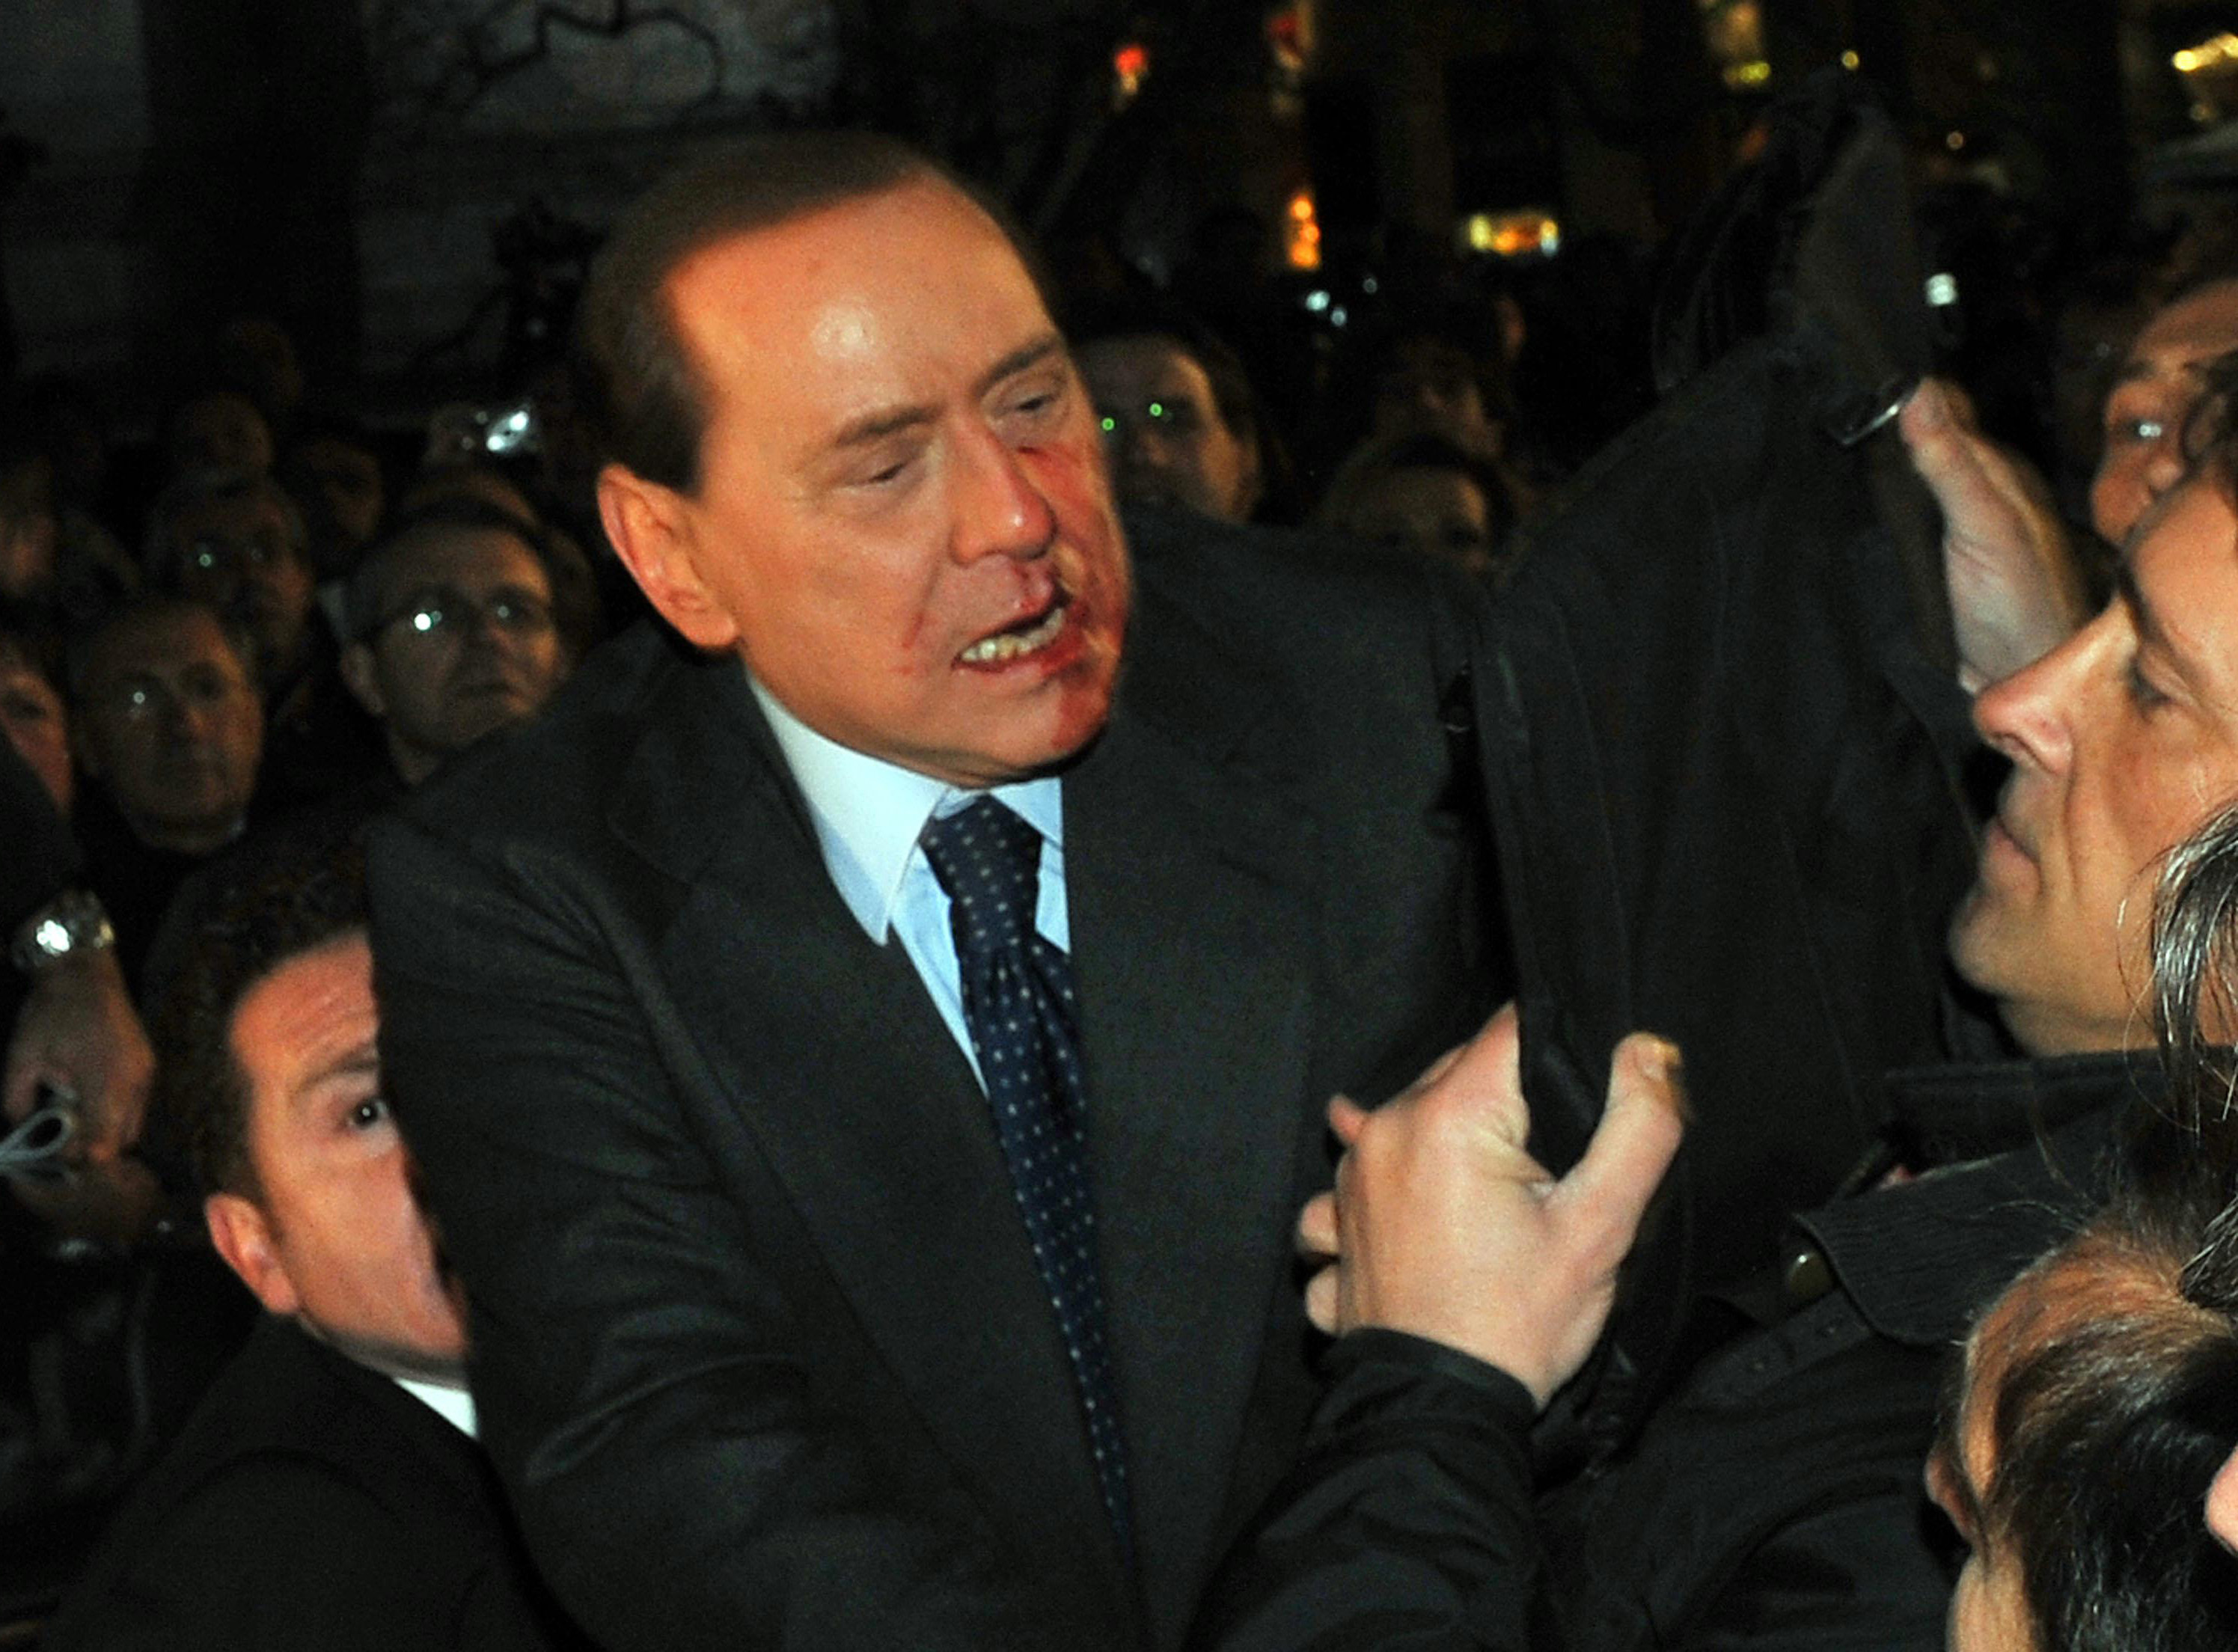 Massimo Tartaglia, Silvio Berlusconi, Attack, Milano, Italien, Berlusconi